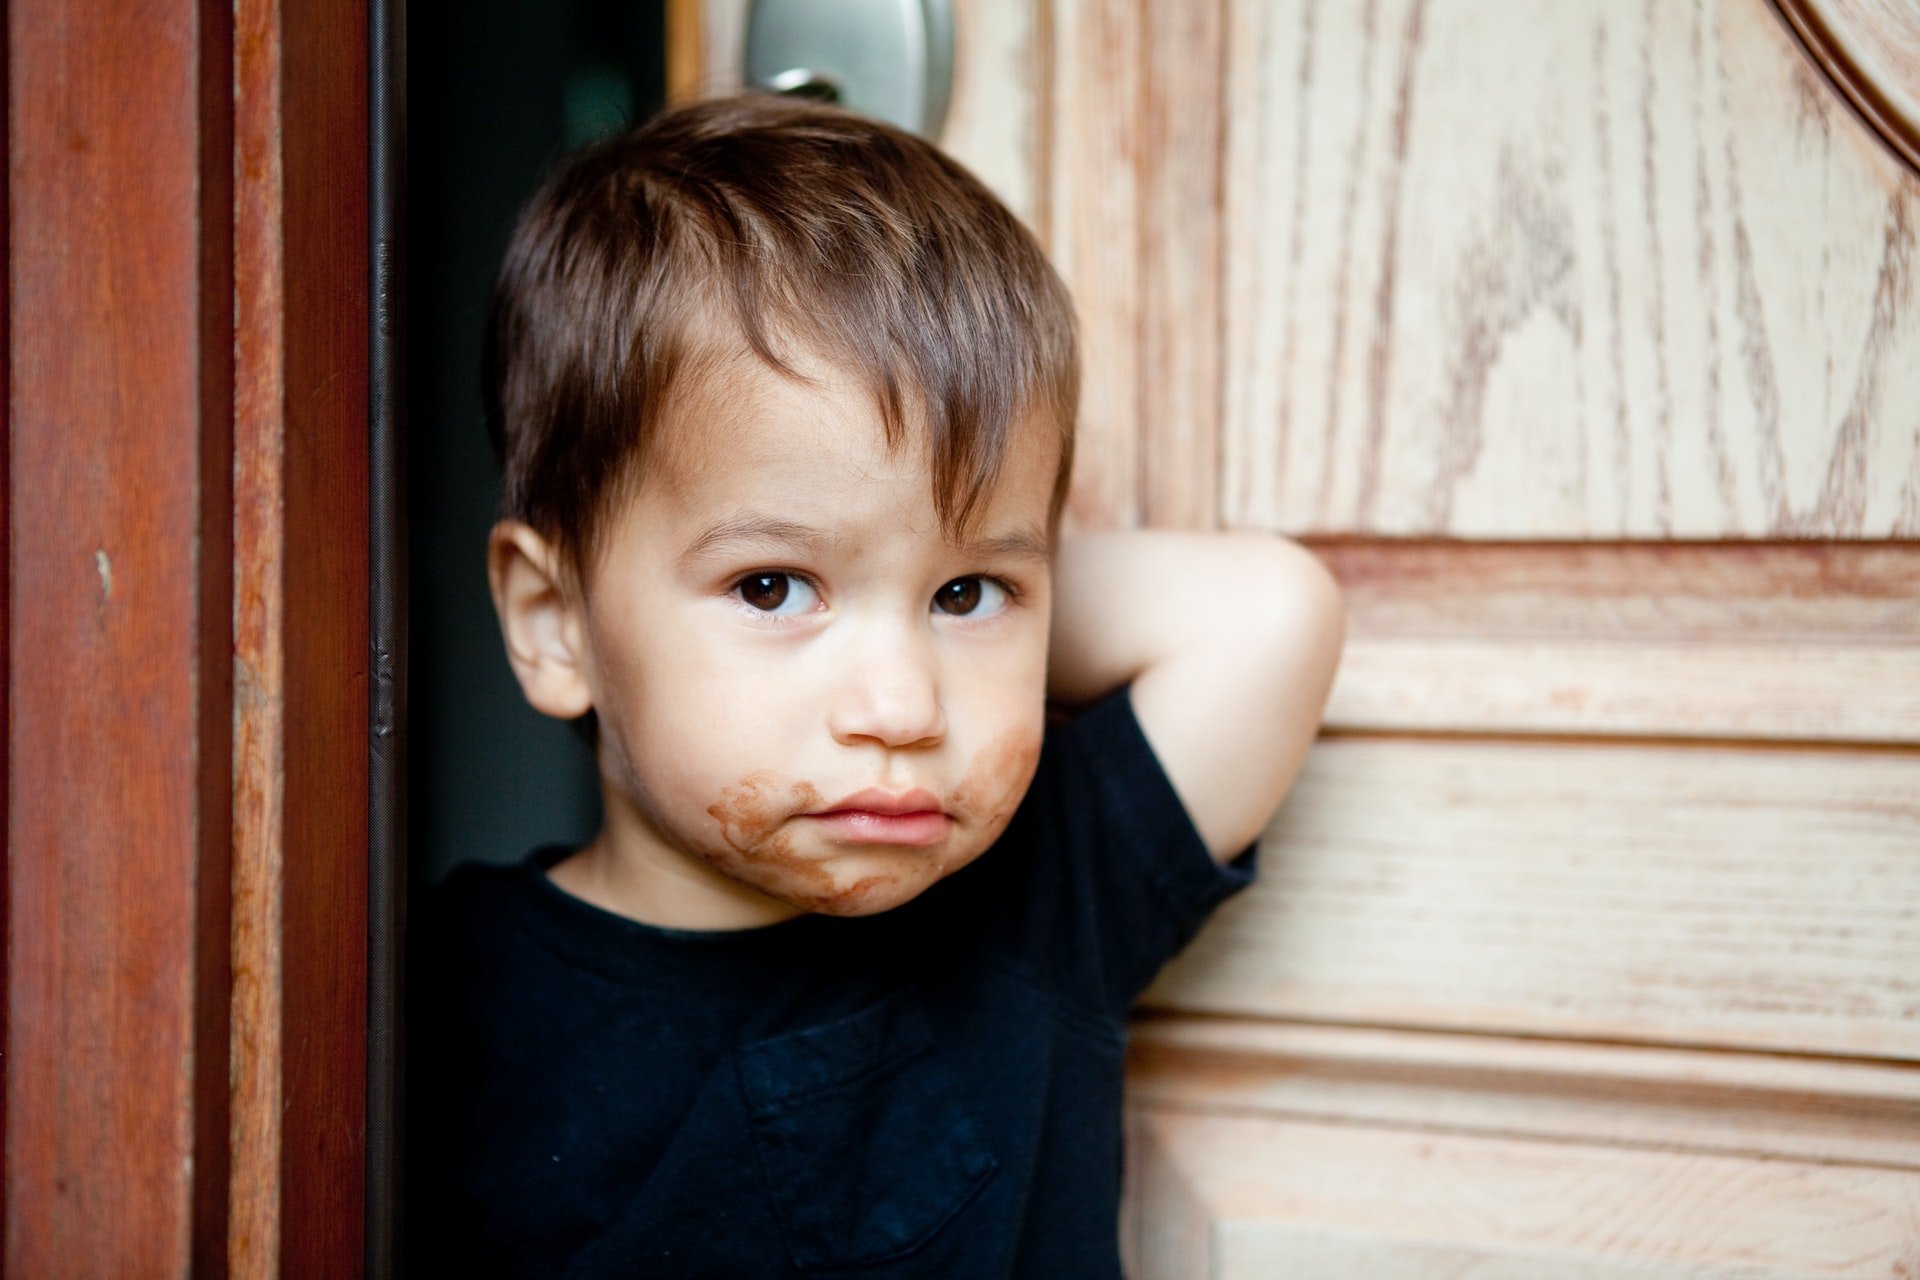 Criança do sexo masculino com a boca e parte do rosto sujo de chocolate